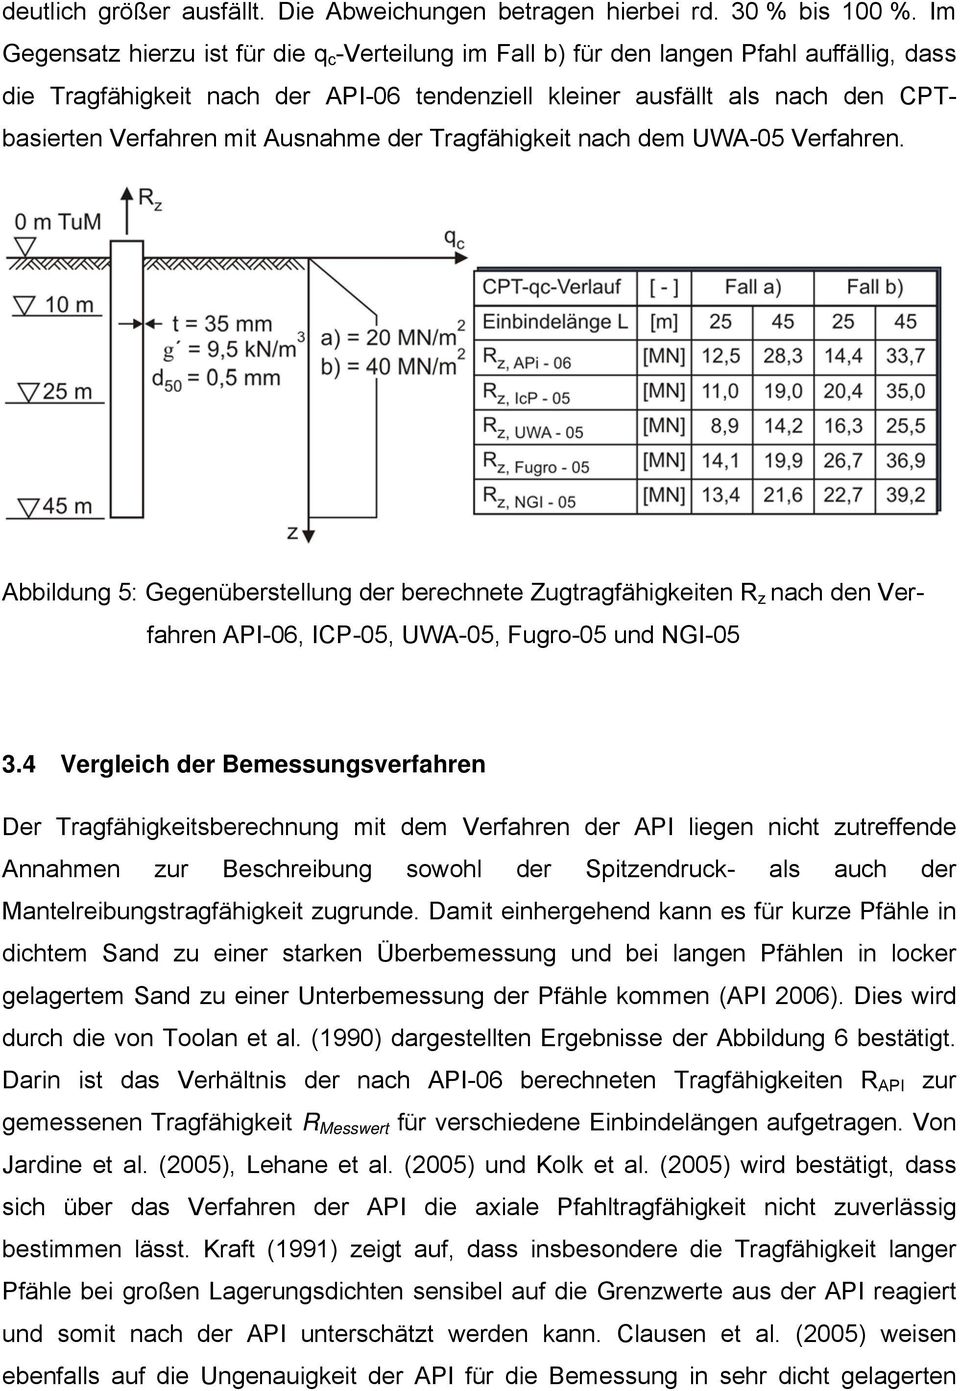 Ausnahme der Tragfähigkeit nach dem UWA-05 Verfahren. Abbildung 5: Gegenüberstellung der berechnete Zugtragfähigkeiten R z nach den Verfahren API-06, ICP-05, UWA-05, Fugro-05 und NGI-05 3.